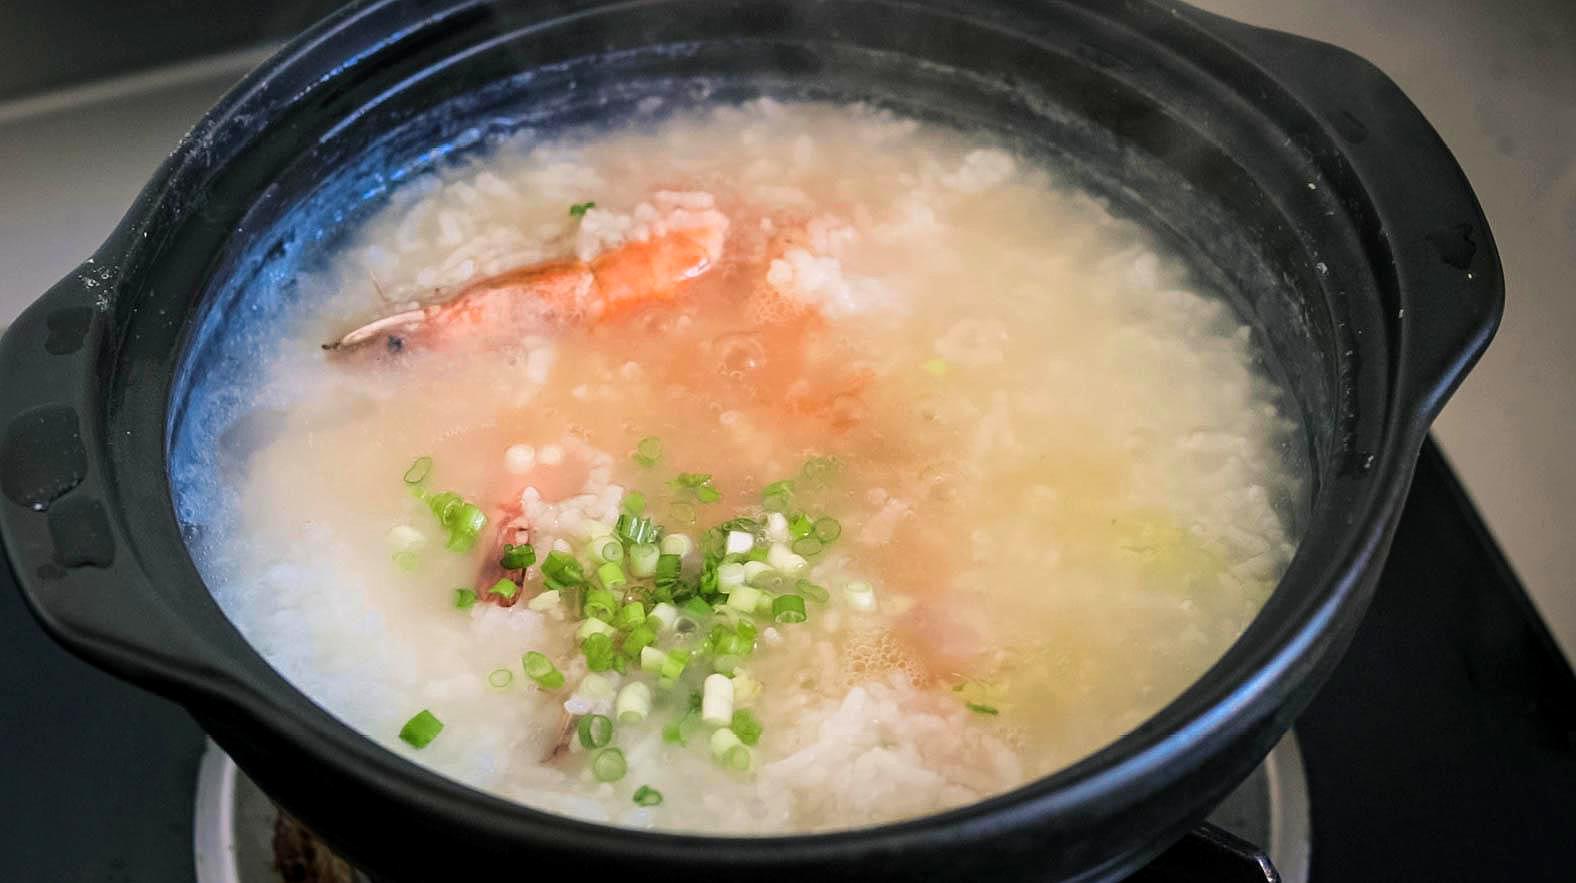 鲜虾粥的家常做法,只需掌握这种煮法,你也能做出鲜嫩浓稠鲜虾粥